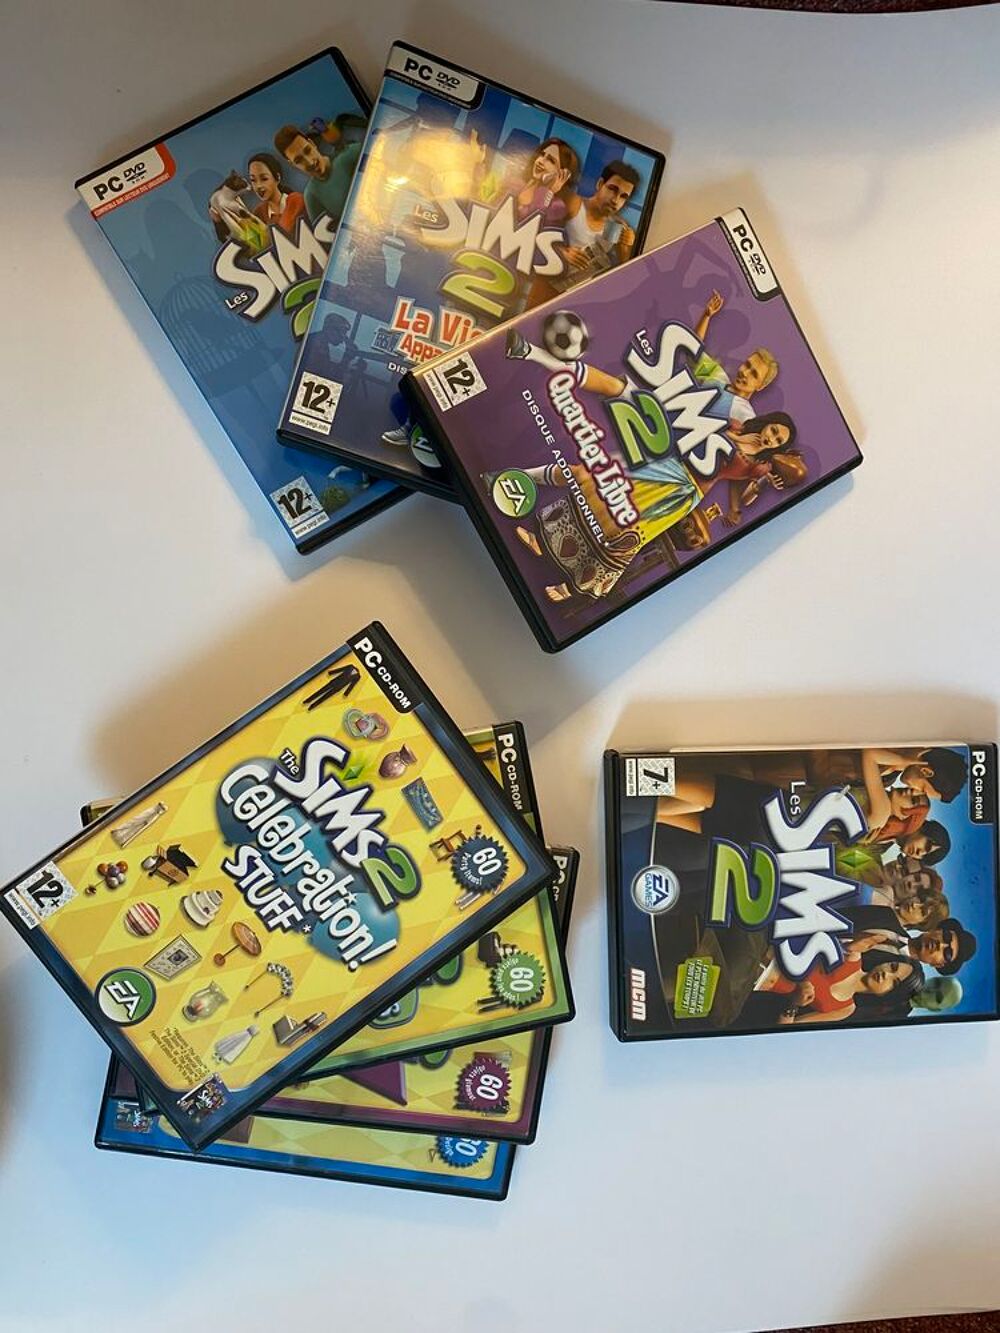 Les Sims 2 (Les Sims 2 + 3 disques additionnels + 4 kits) Consoles et jeux vidos